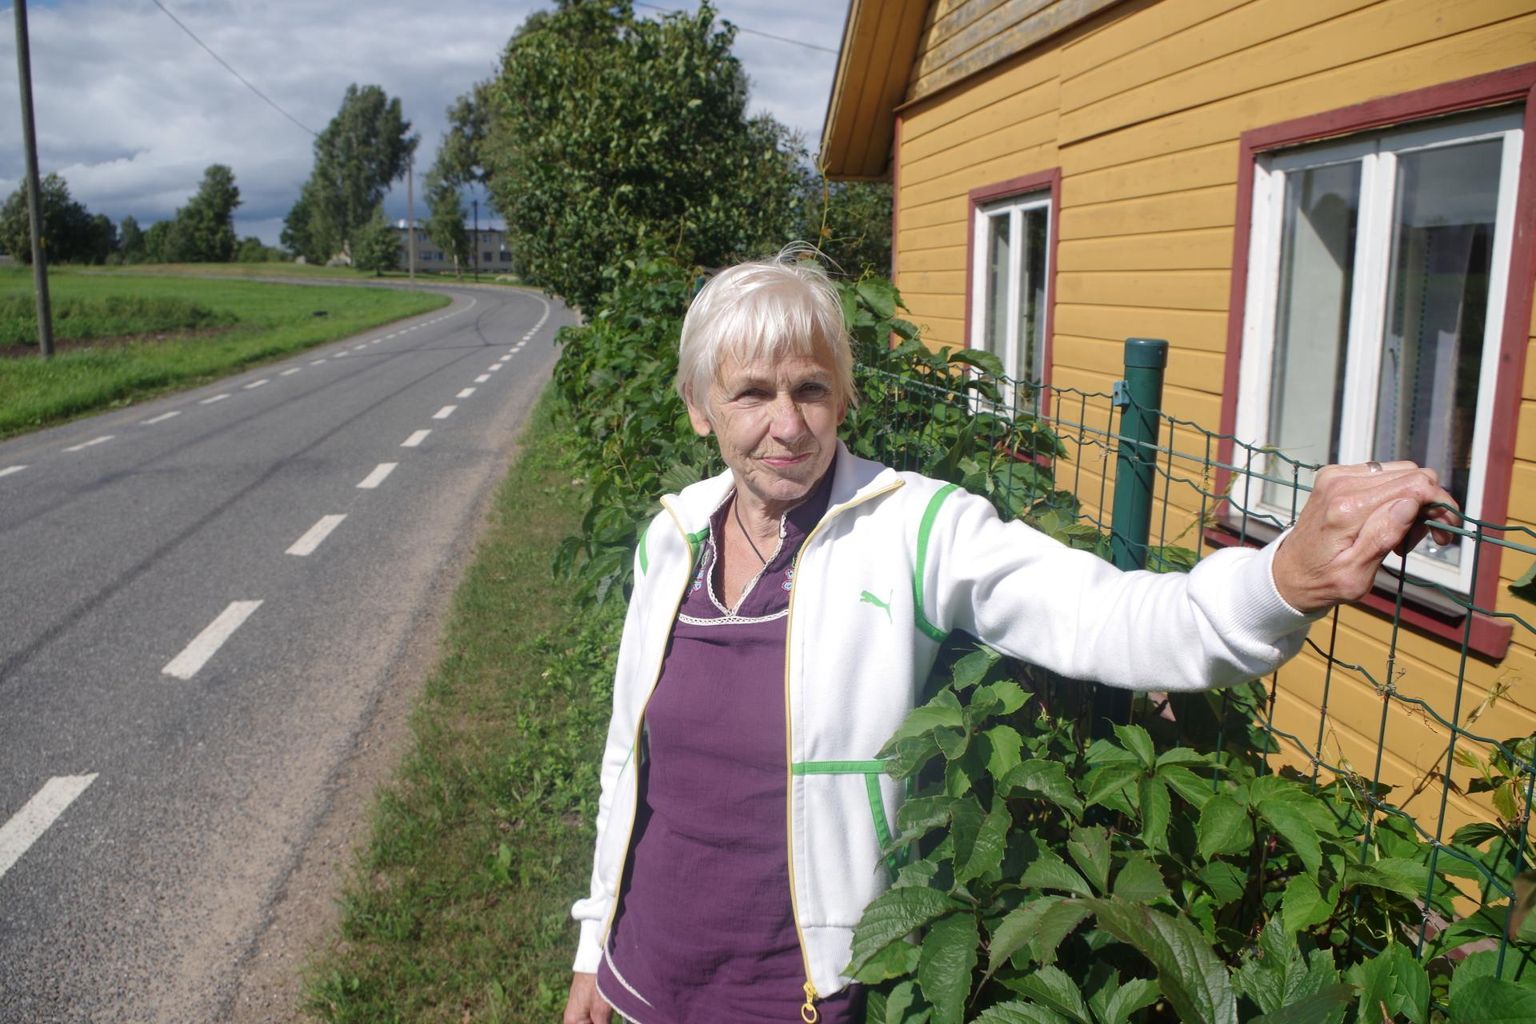 Navi küla elanik Elvi Sepp sooviks sõiduteel kiiruse piiramist, et tema koduakendest vähem lärmi sisse kostaks.